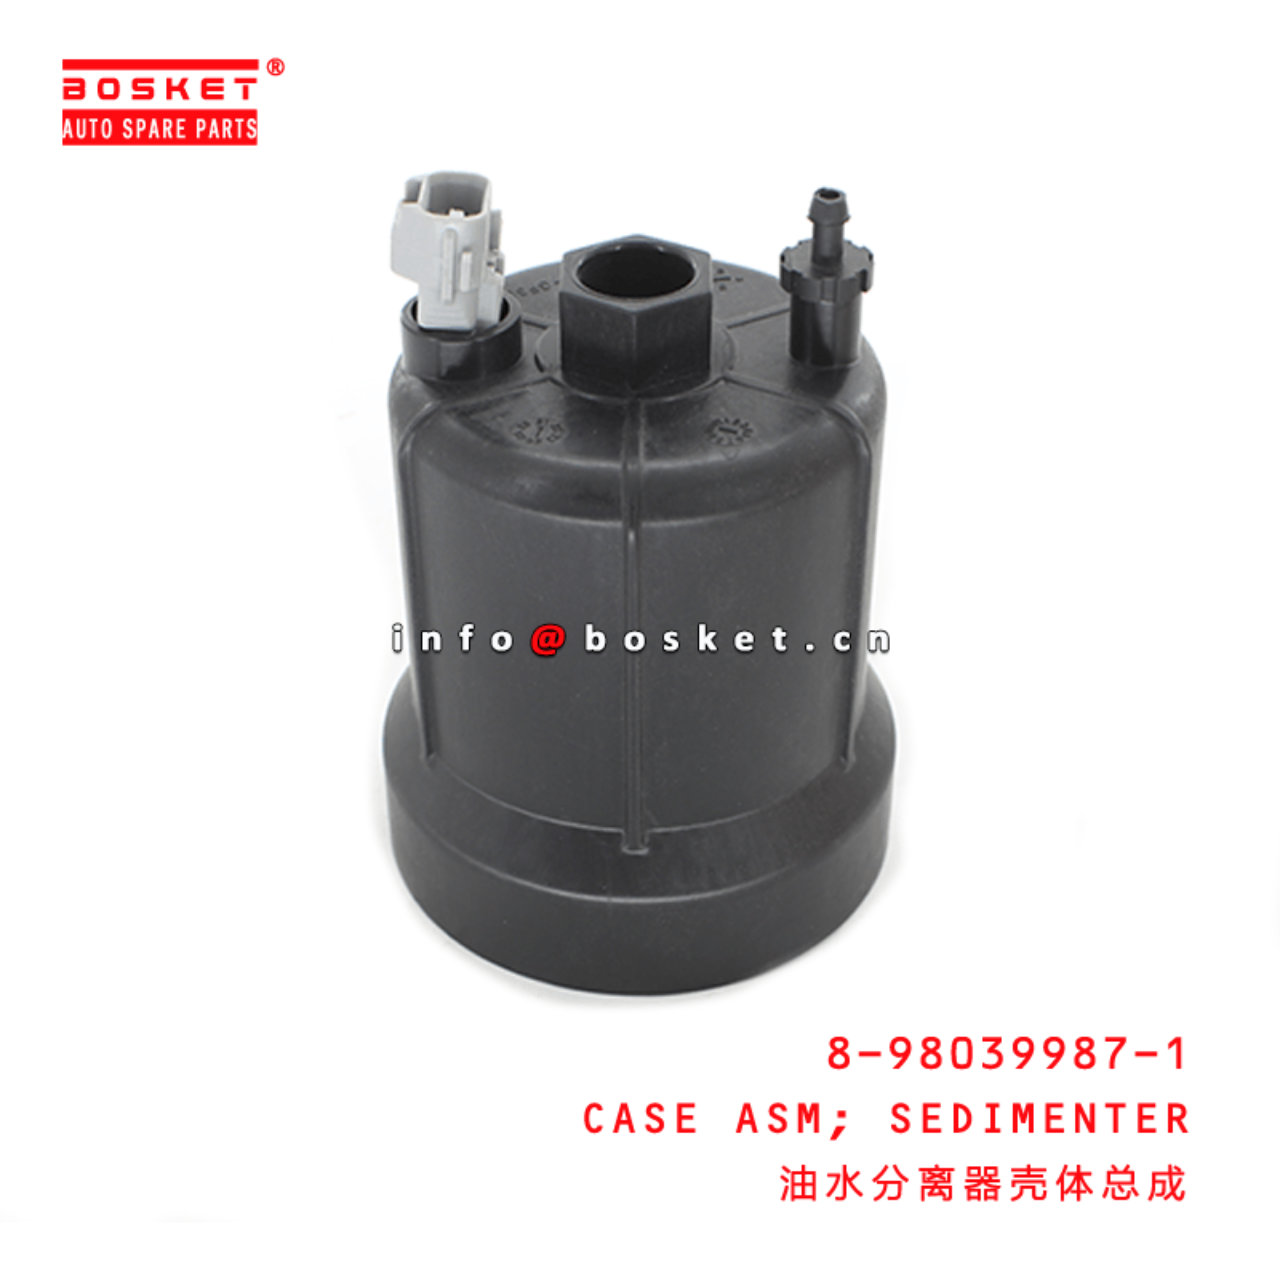 8-98039987-1 Sedimenter Case Assembly Suitable for ISUZU FRR FSR FTR 4JJ1 4HK1 8980399871